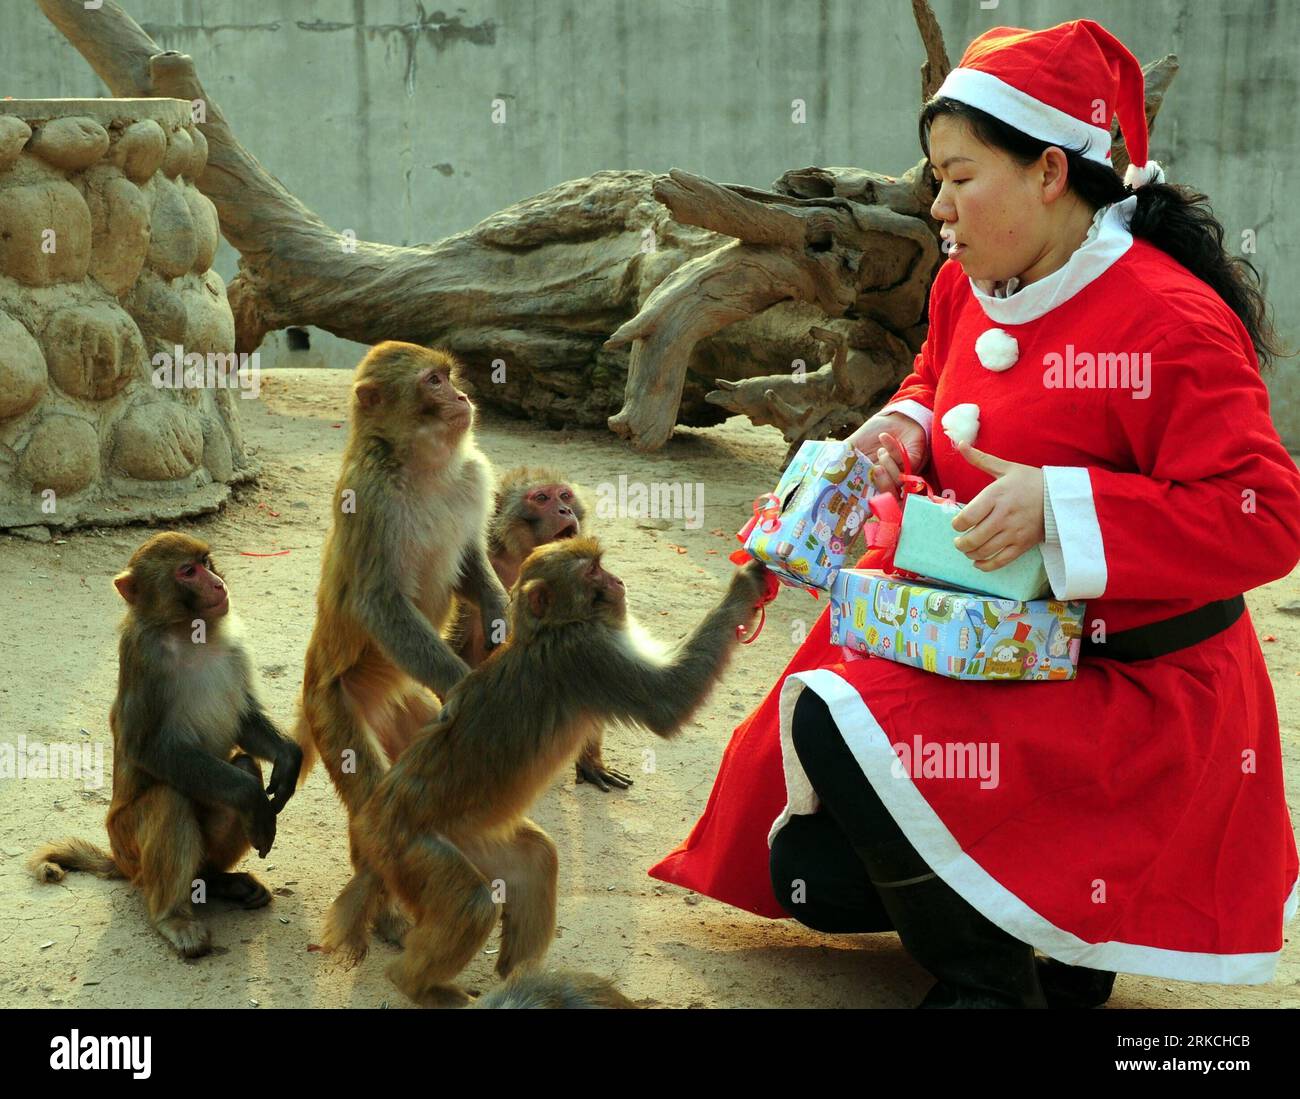 Bildnummer: 54768537 Datum: 23.12.2010 Copyright: imago/Xinhua (101224) -- XI AN, 24. Dezember 2010 (Xinhua) -- ein Feeder, der wie der Weihnachtsmann gekleidet ist, verteilt gut verpackte Lebensmittel an Affen während einer Aktivität zum bevorstehenden Weihnachtsfeiertag im Qinling Wild Animal Zoo in Xi an, der Hauptstadt der nordwestchinesischen Provinz Shaanxi, 23. Dezember 2010. (Xinhua/Yuan Jingzhi) (hdt) CHINA-XI AN-ZOO-CHRISTMAS (CN) PUBLICATIONxNOTxINxCHN Gesellschaft Weihnachten Tiere Geschenke kbdig xub 2010 quer Highlight Uraufführung kurios Komik o0 Bescherung Weihnachtsfrau Bildnummer 54768537 Datum 23 12 2010 Copyright Stockfoto